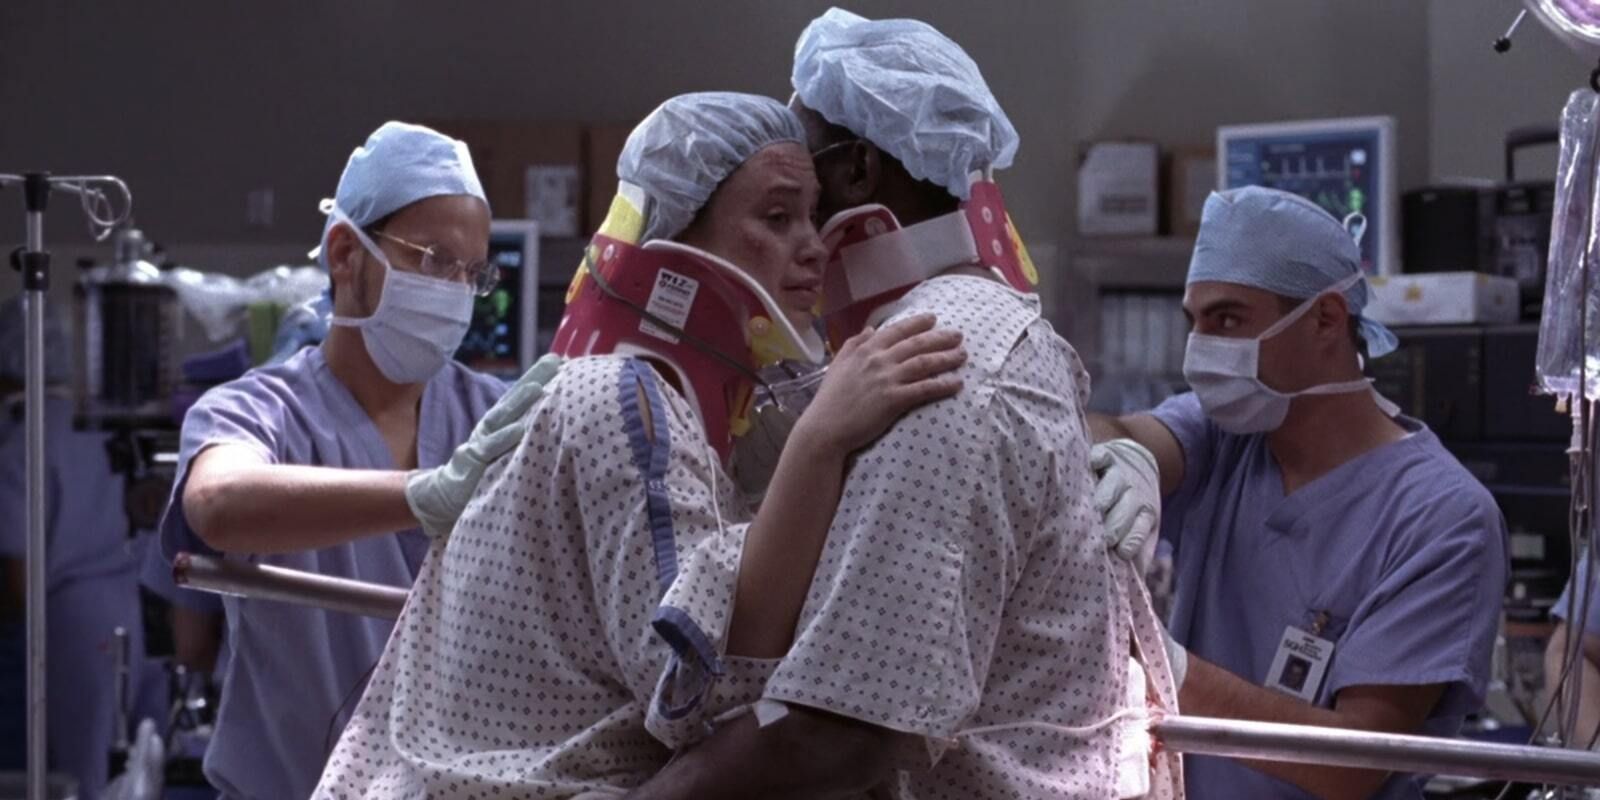 Bonnie e Tom empalados por Train Pole no episódio de Grey's Anatomy, Into You like a Train.